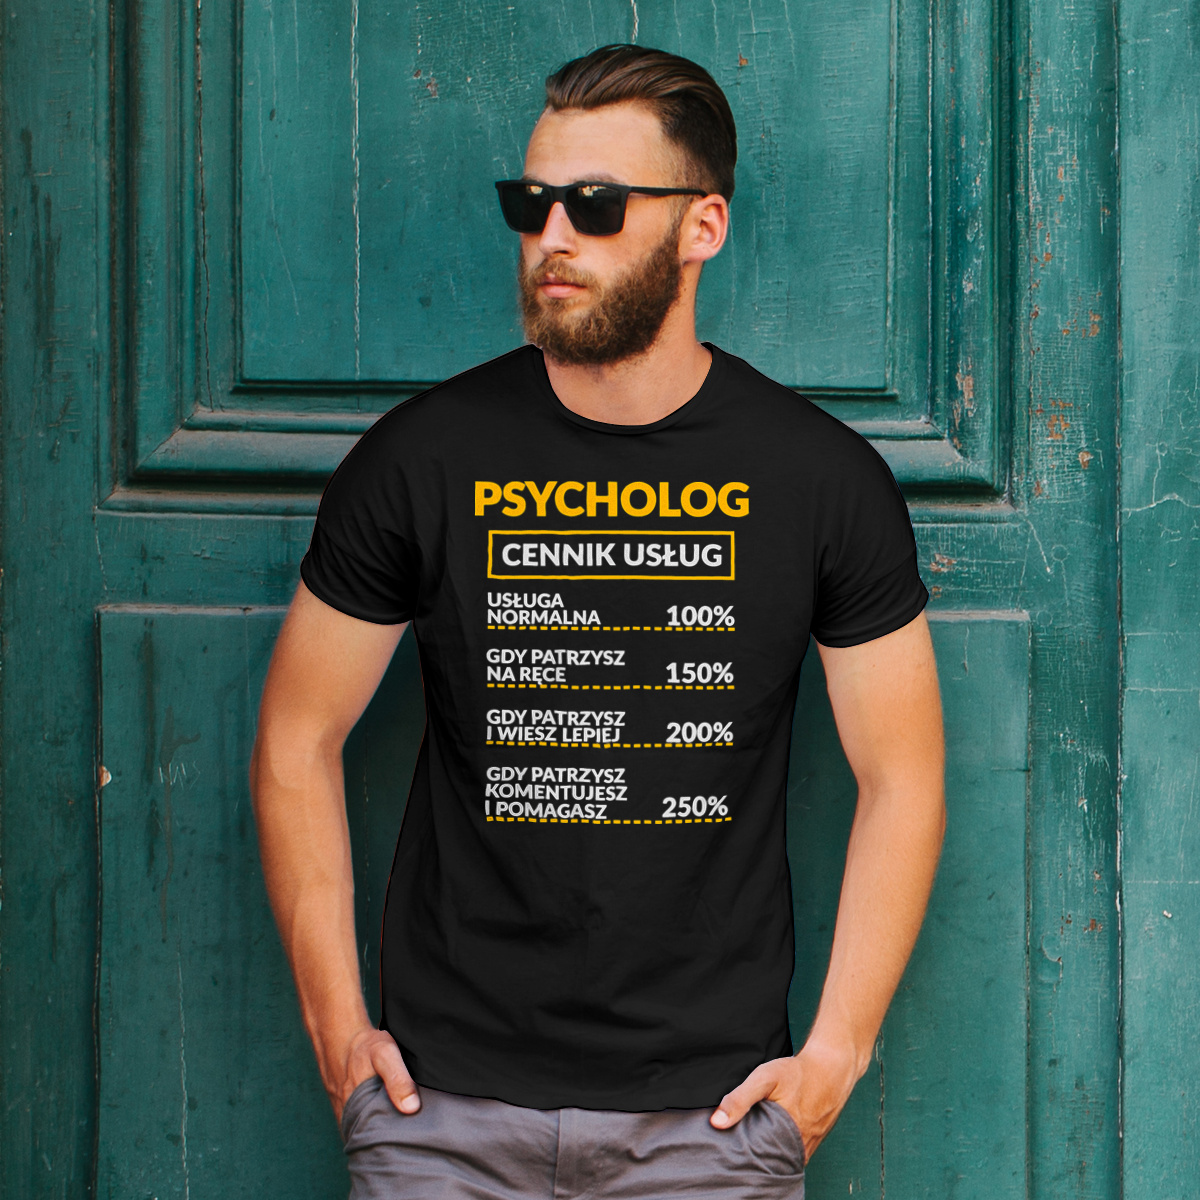 Psycholog - Cennik Usług - Męska Koszulka Czarna